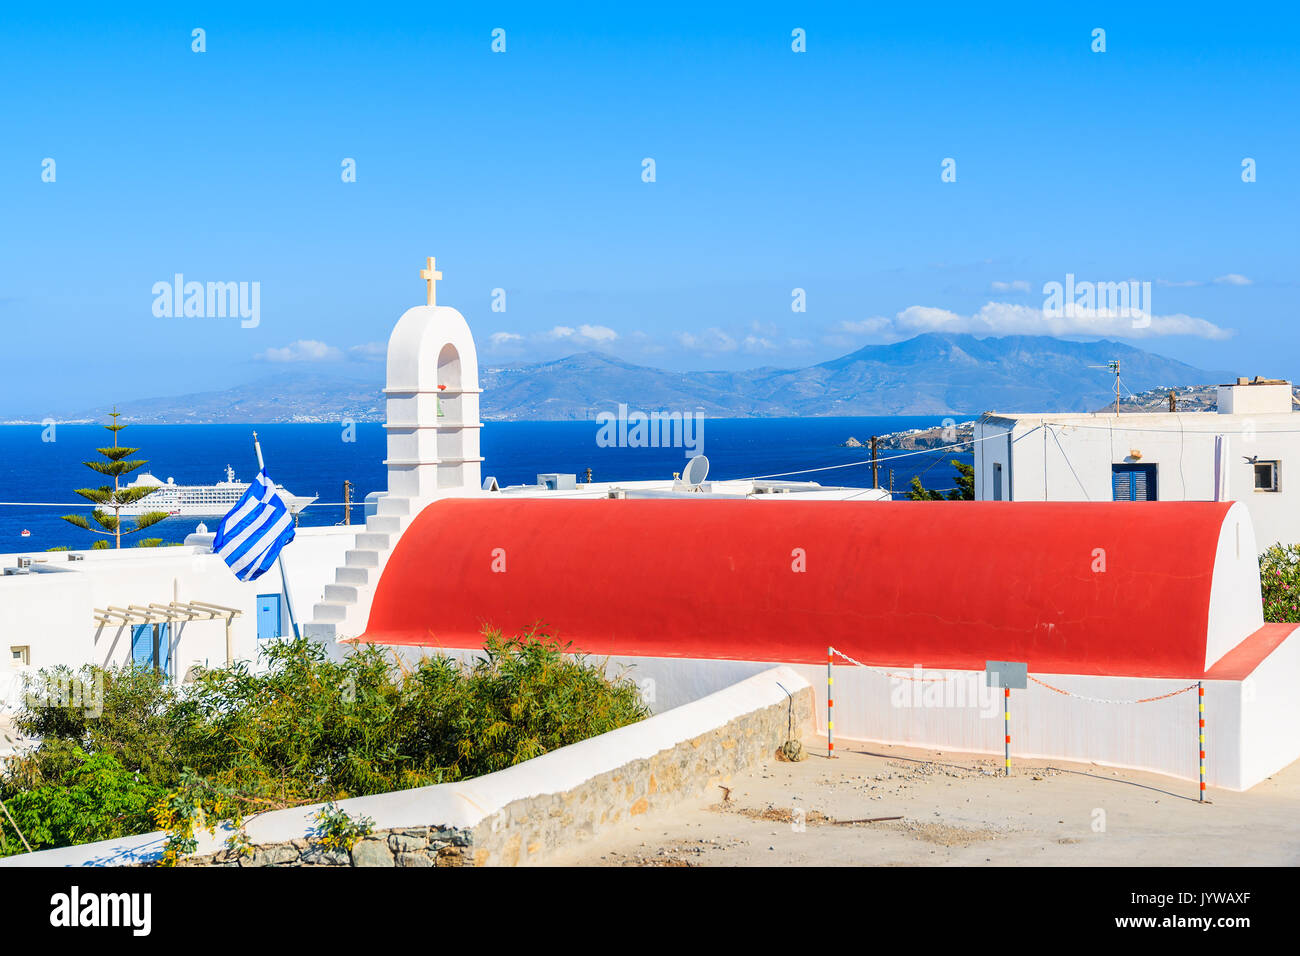 Grec typique église blanche au toit rouge et vue sur le port de Mykonos, l'île de Mykonos, Cyclades, Grèce Banque D'Images